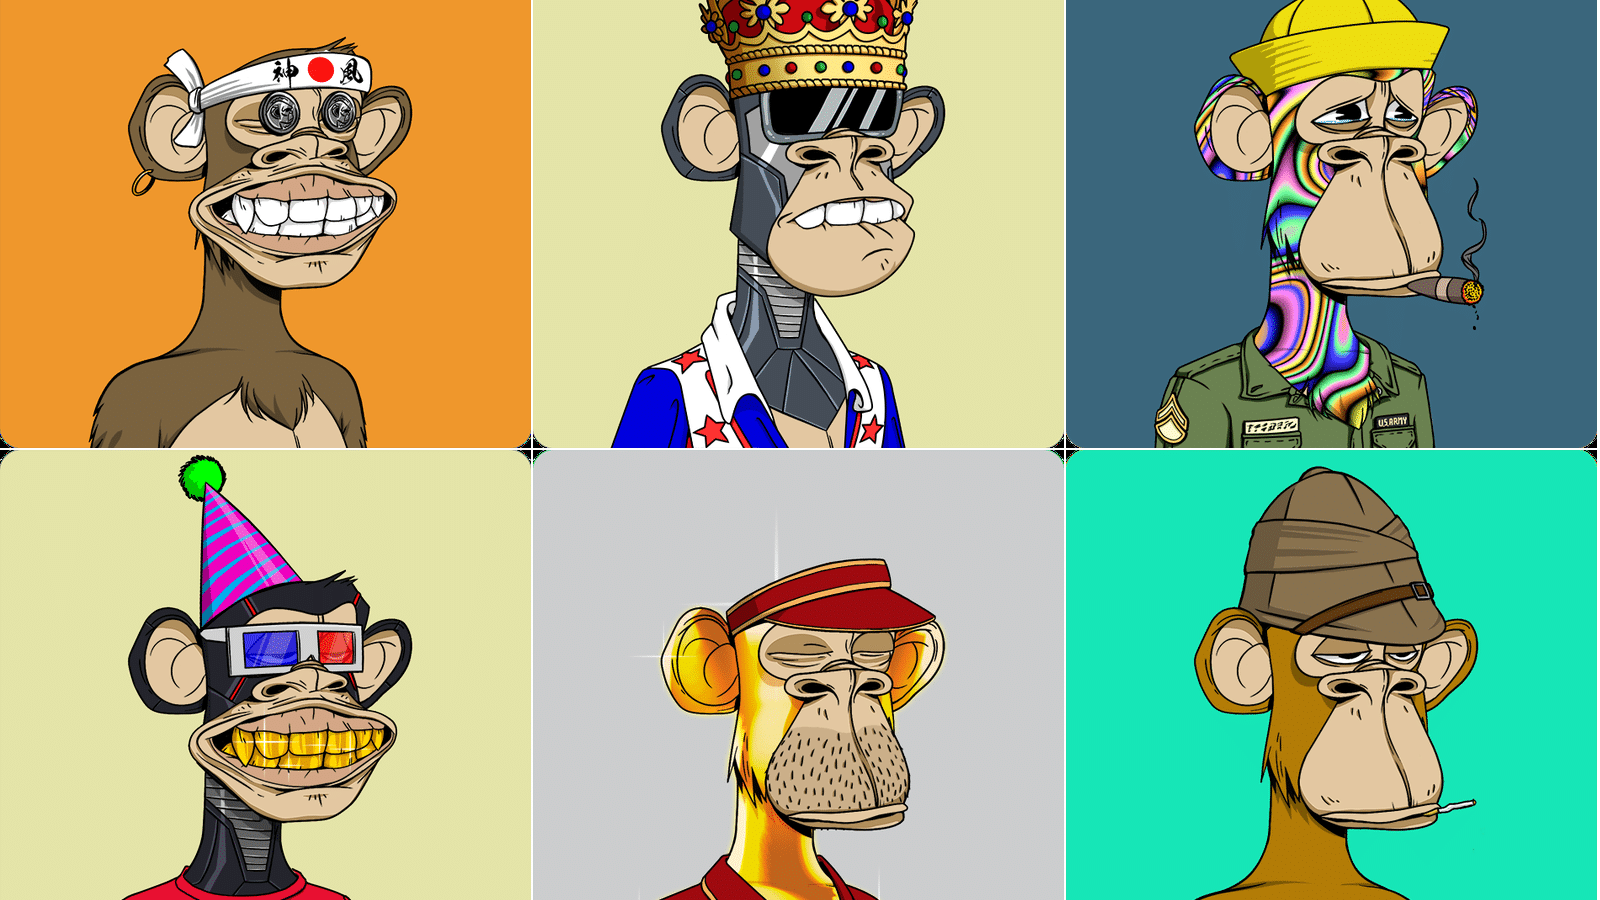 NFT Monkeys or Bored Apes digital tokens